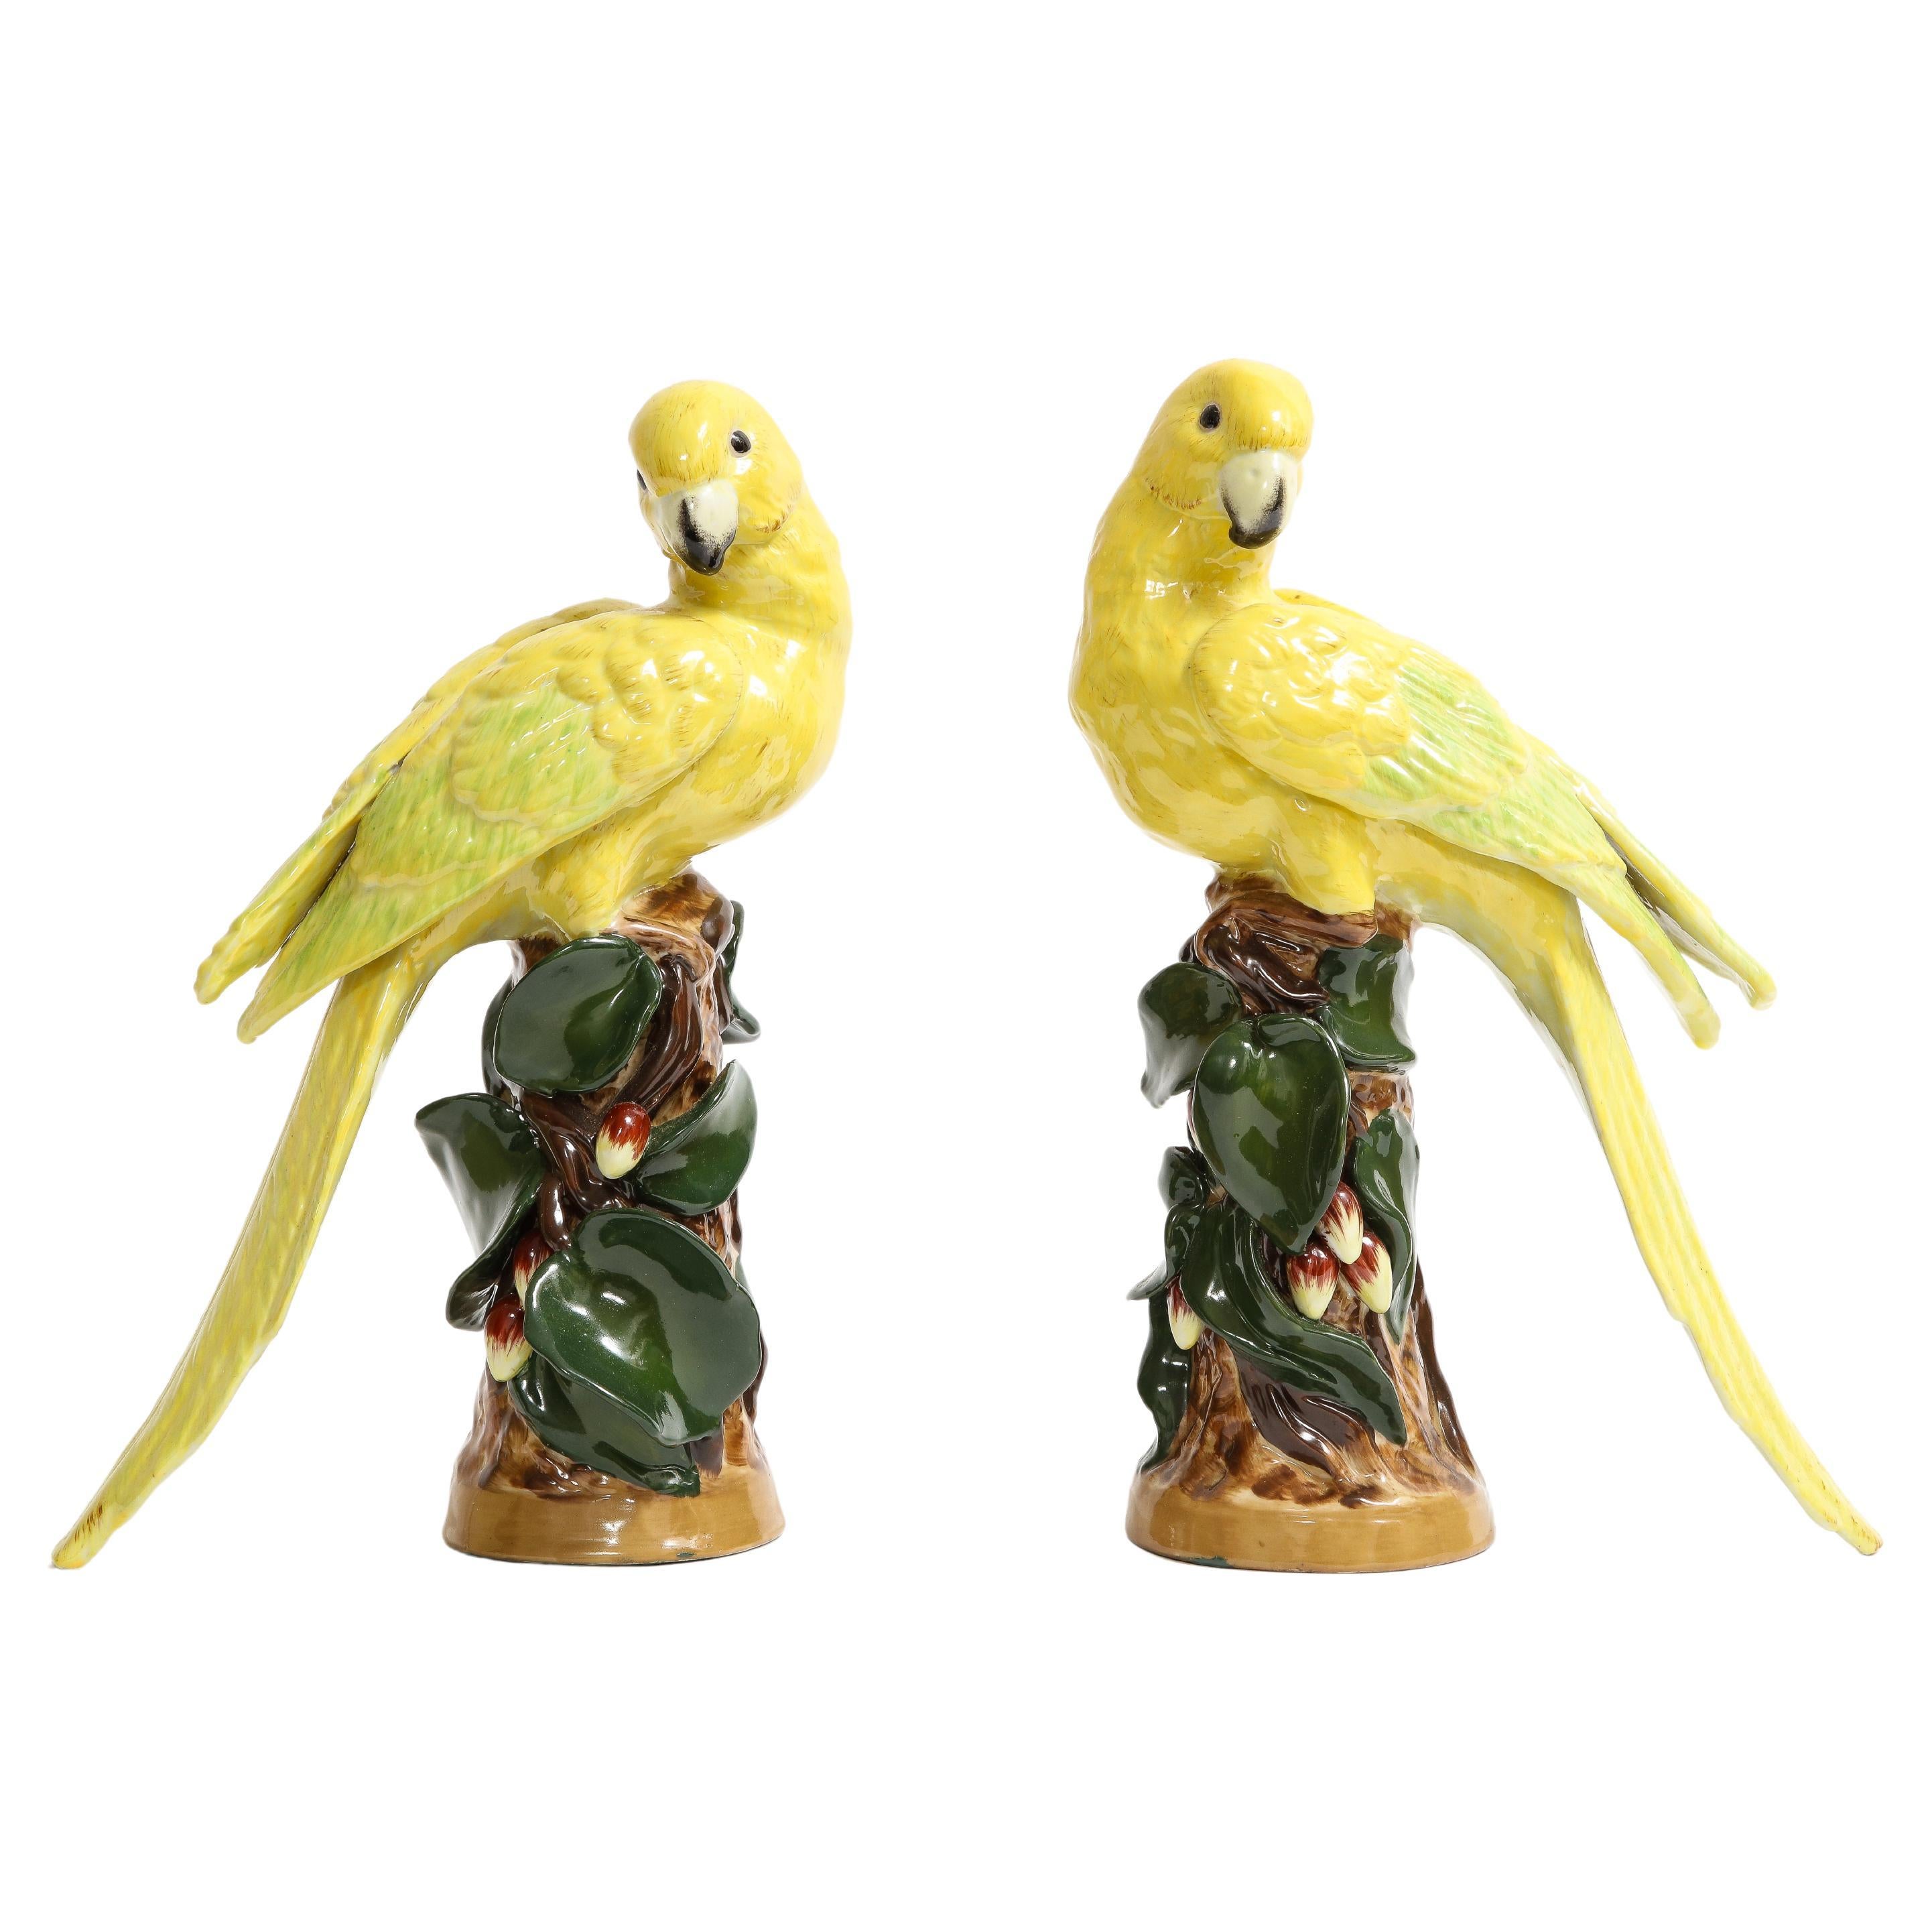 Ein Paar gelbe Vögel aus deutschem Porzellan, geflügelt auf Baumzweigen